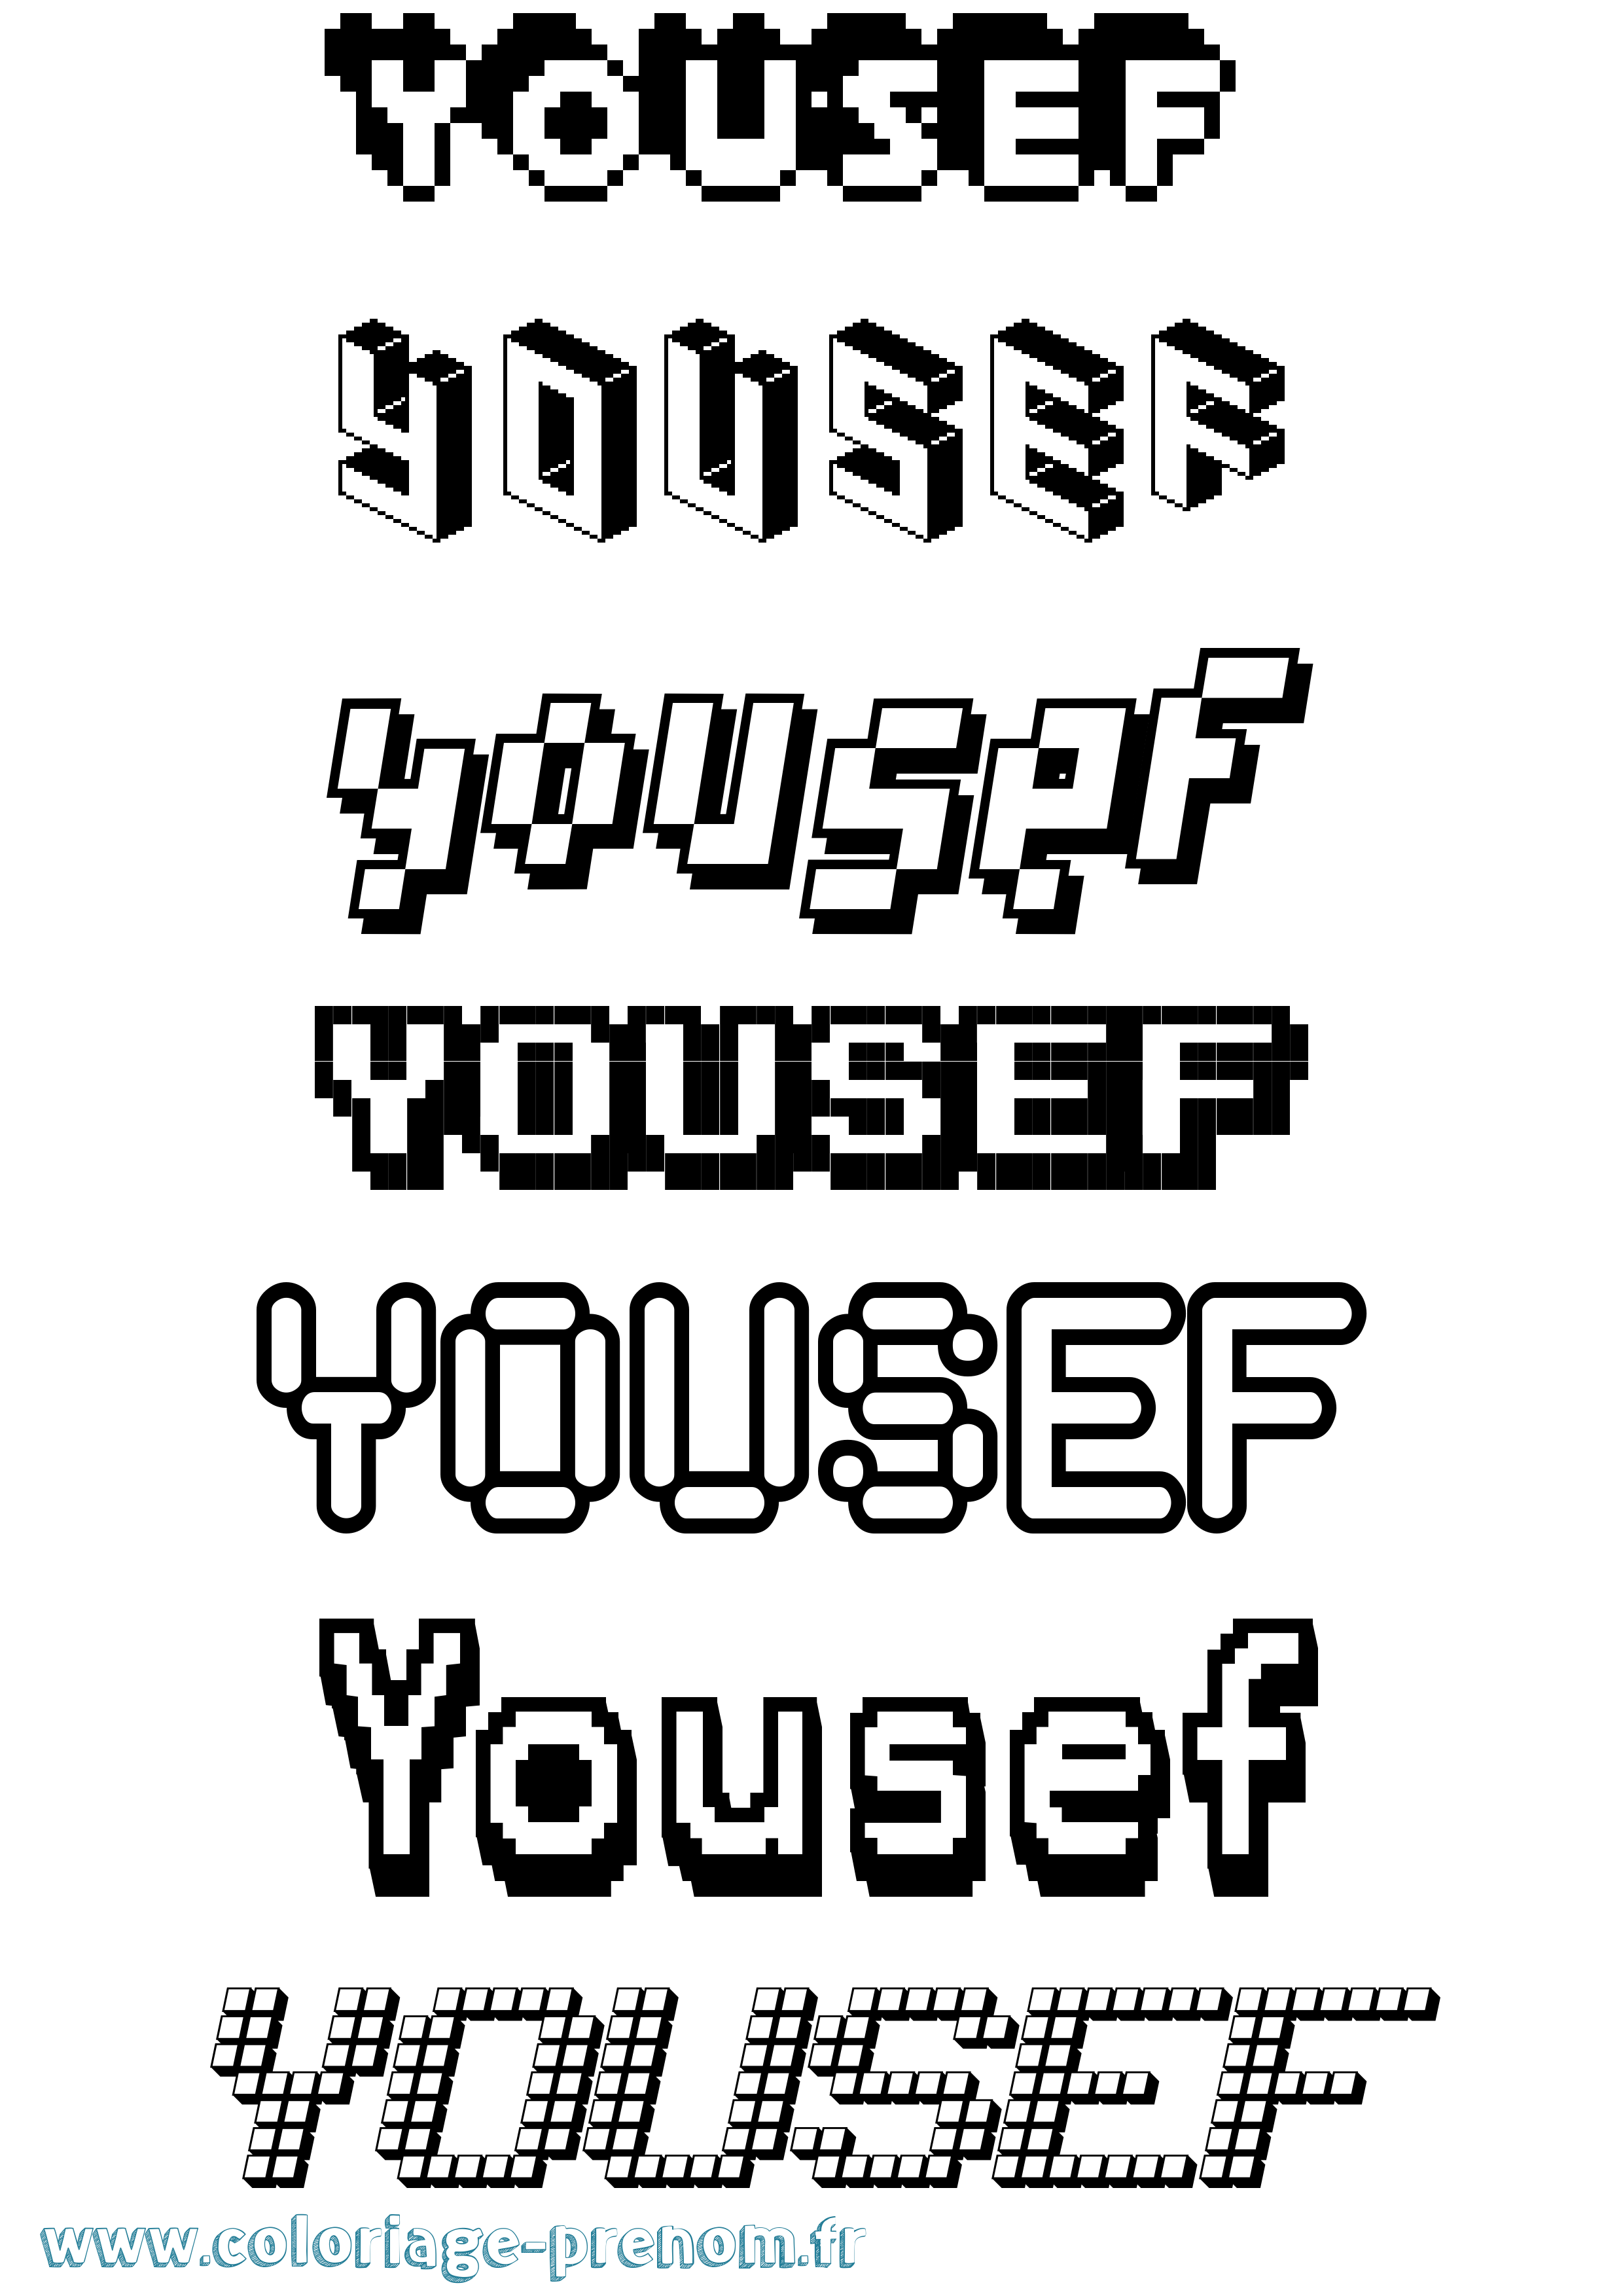 Coloriage prénom Yousef Pixel